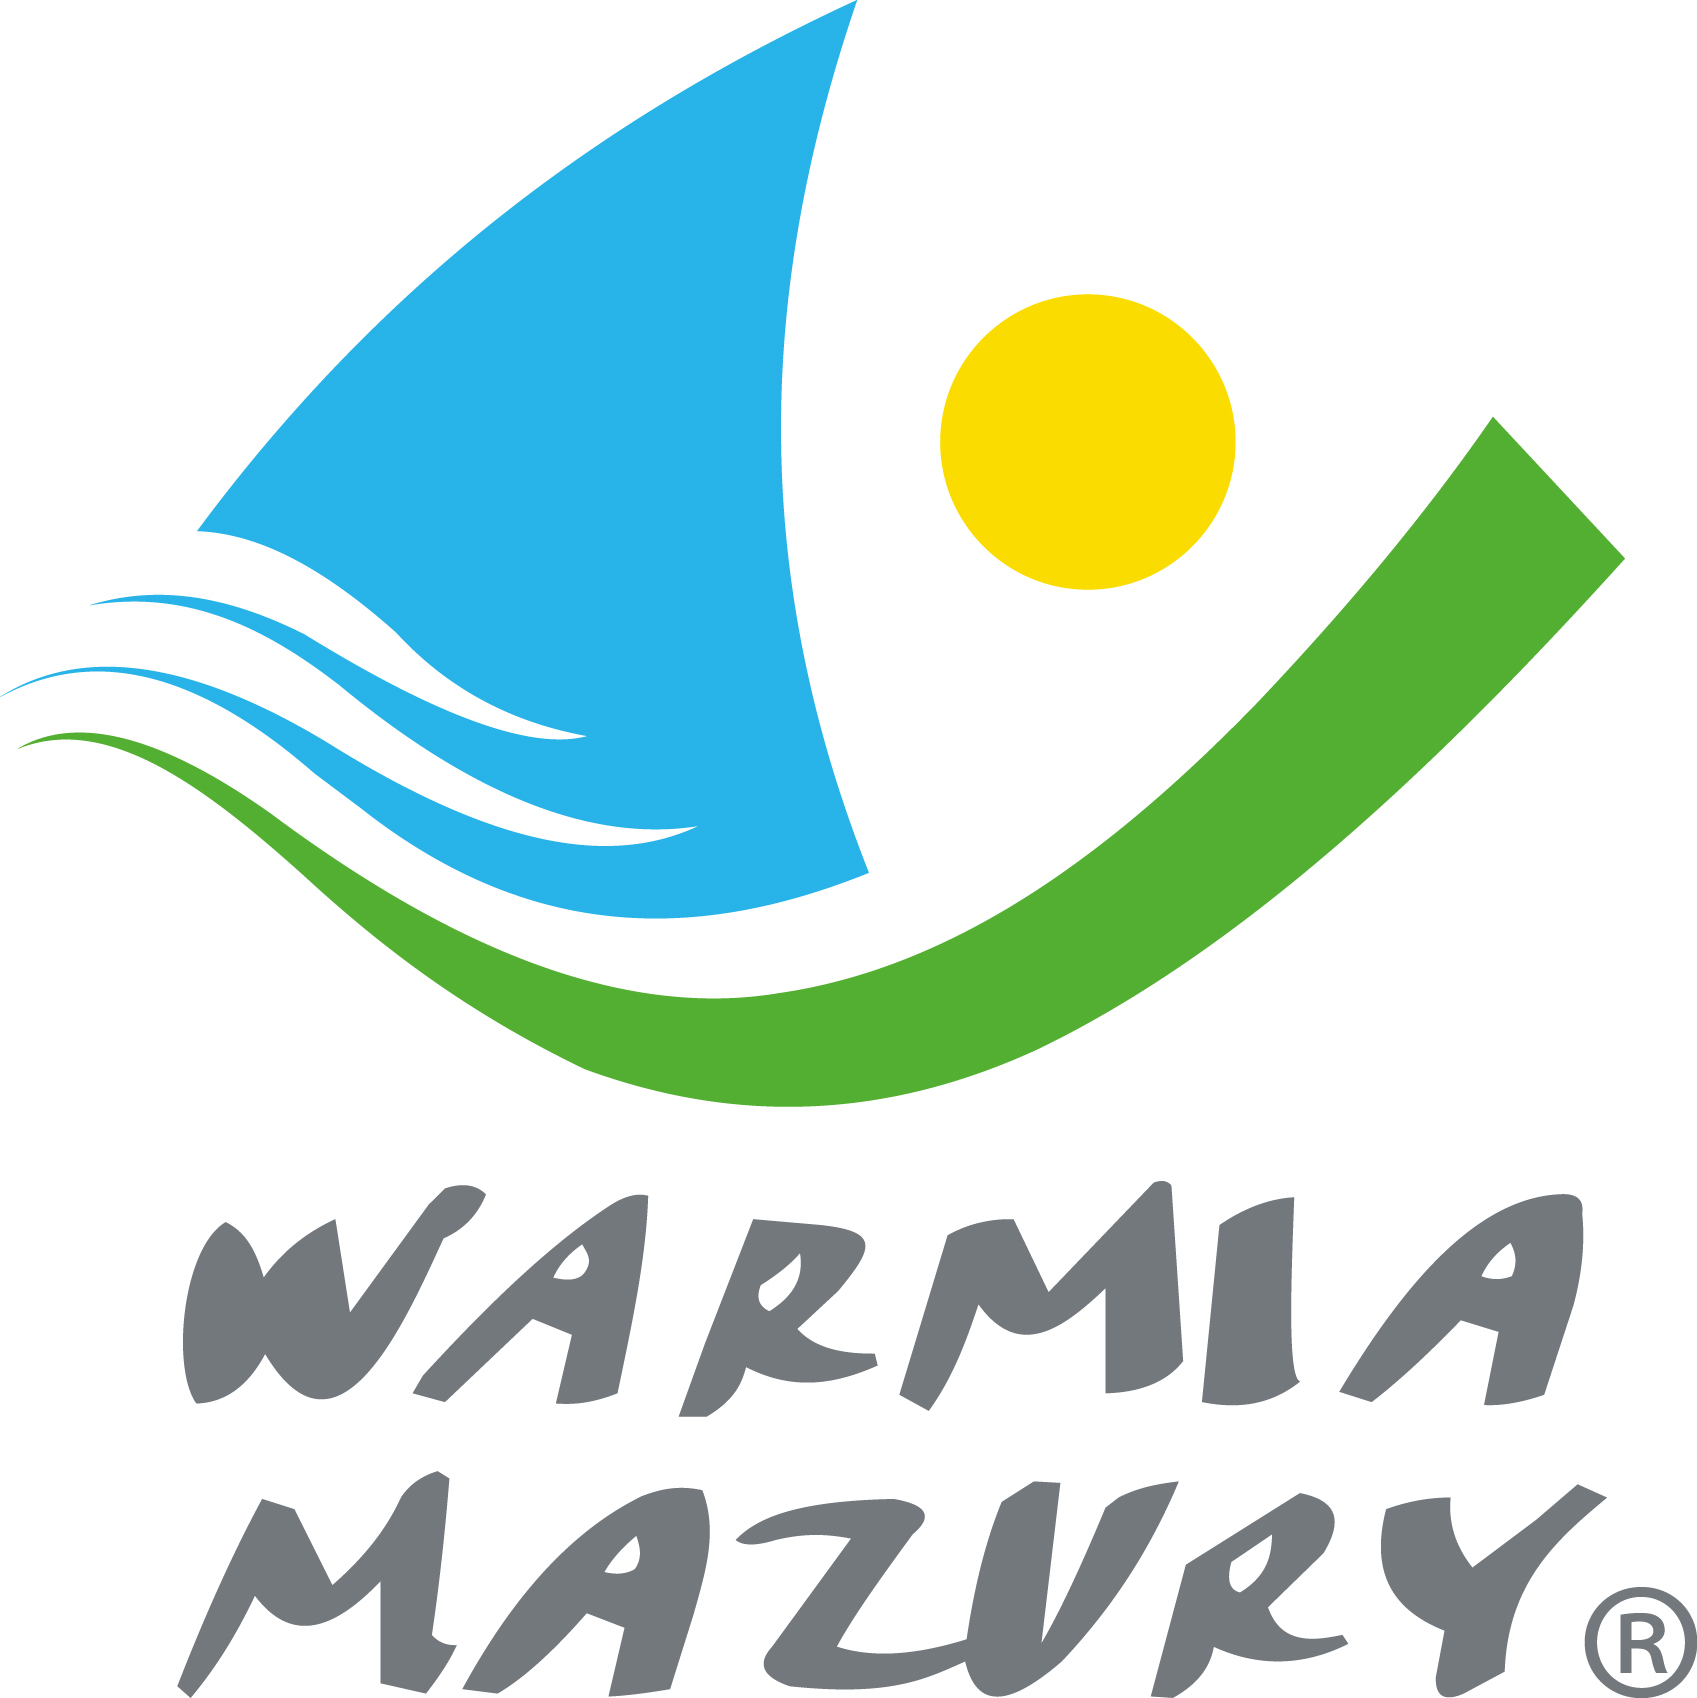 Warmia Mazury LOGO